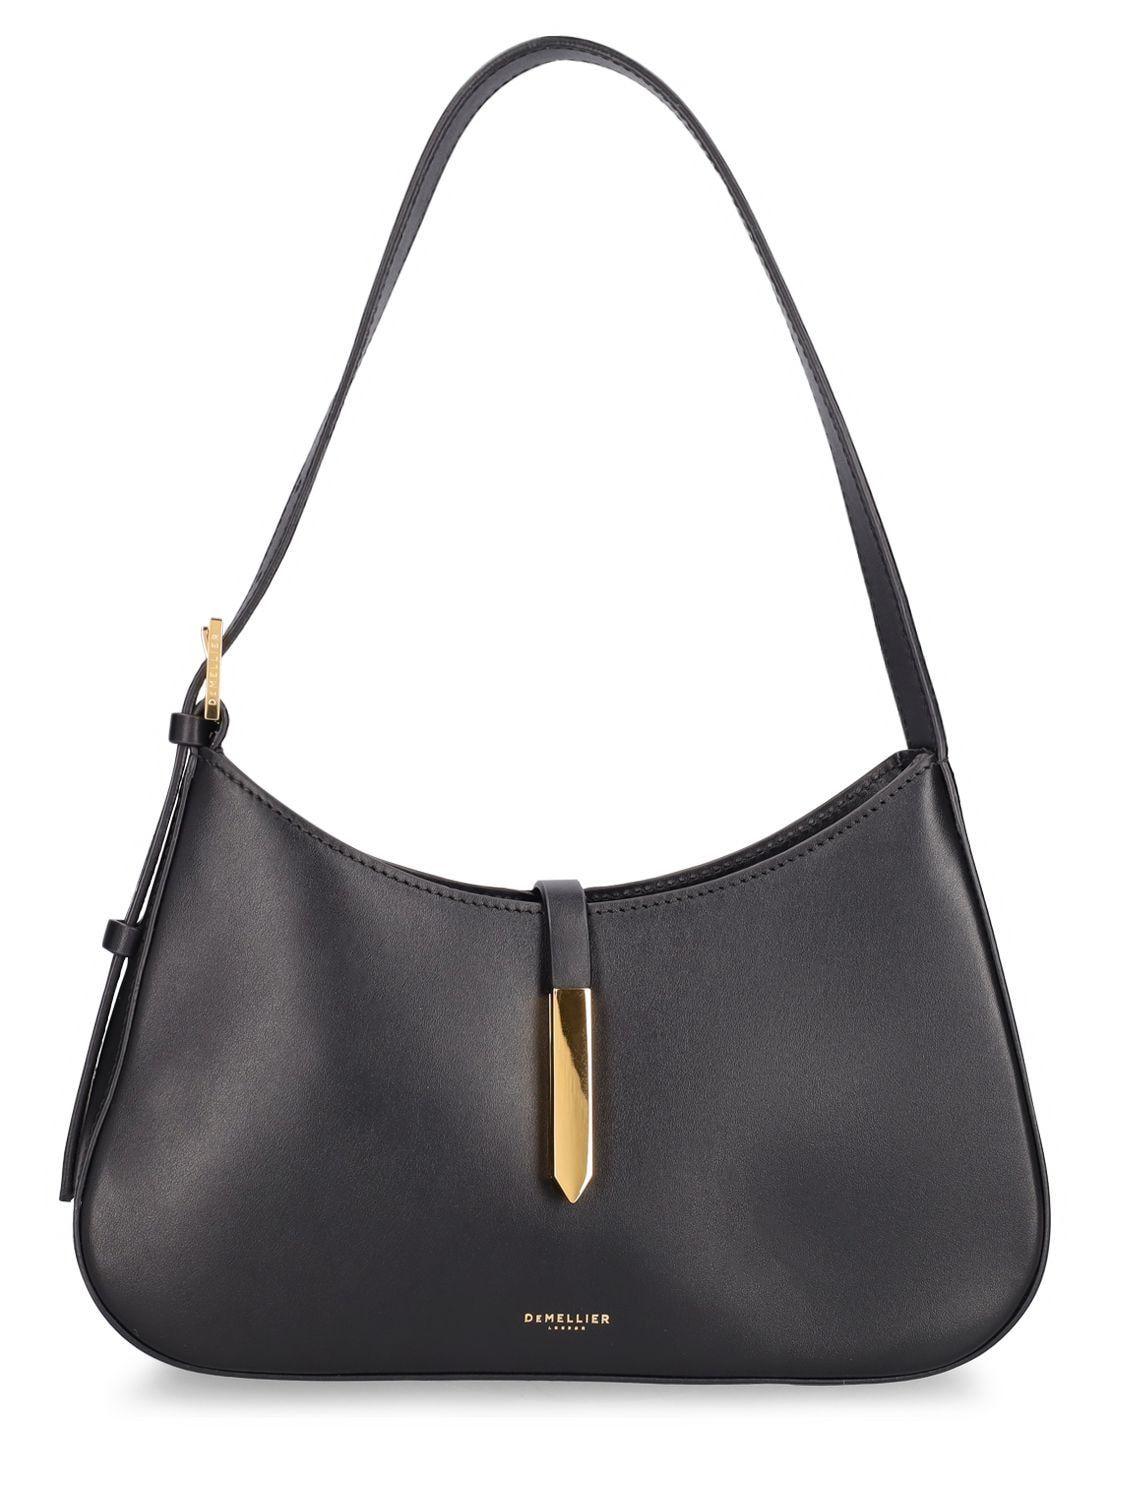 DeMellier Tokyo Smooth Leather Shoulder Bag in Black | Lyst